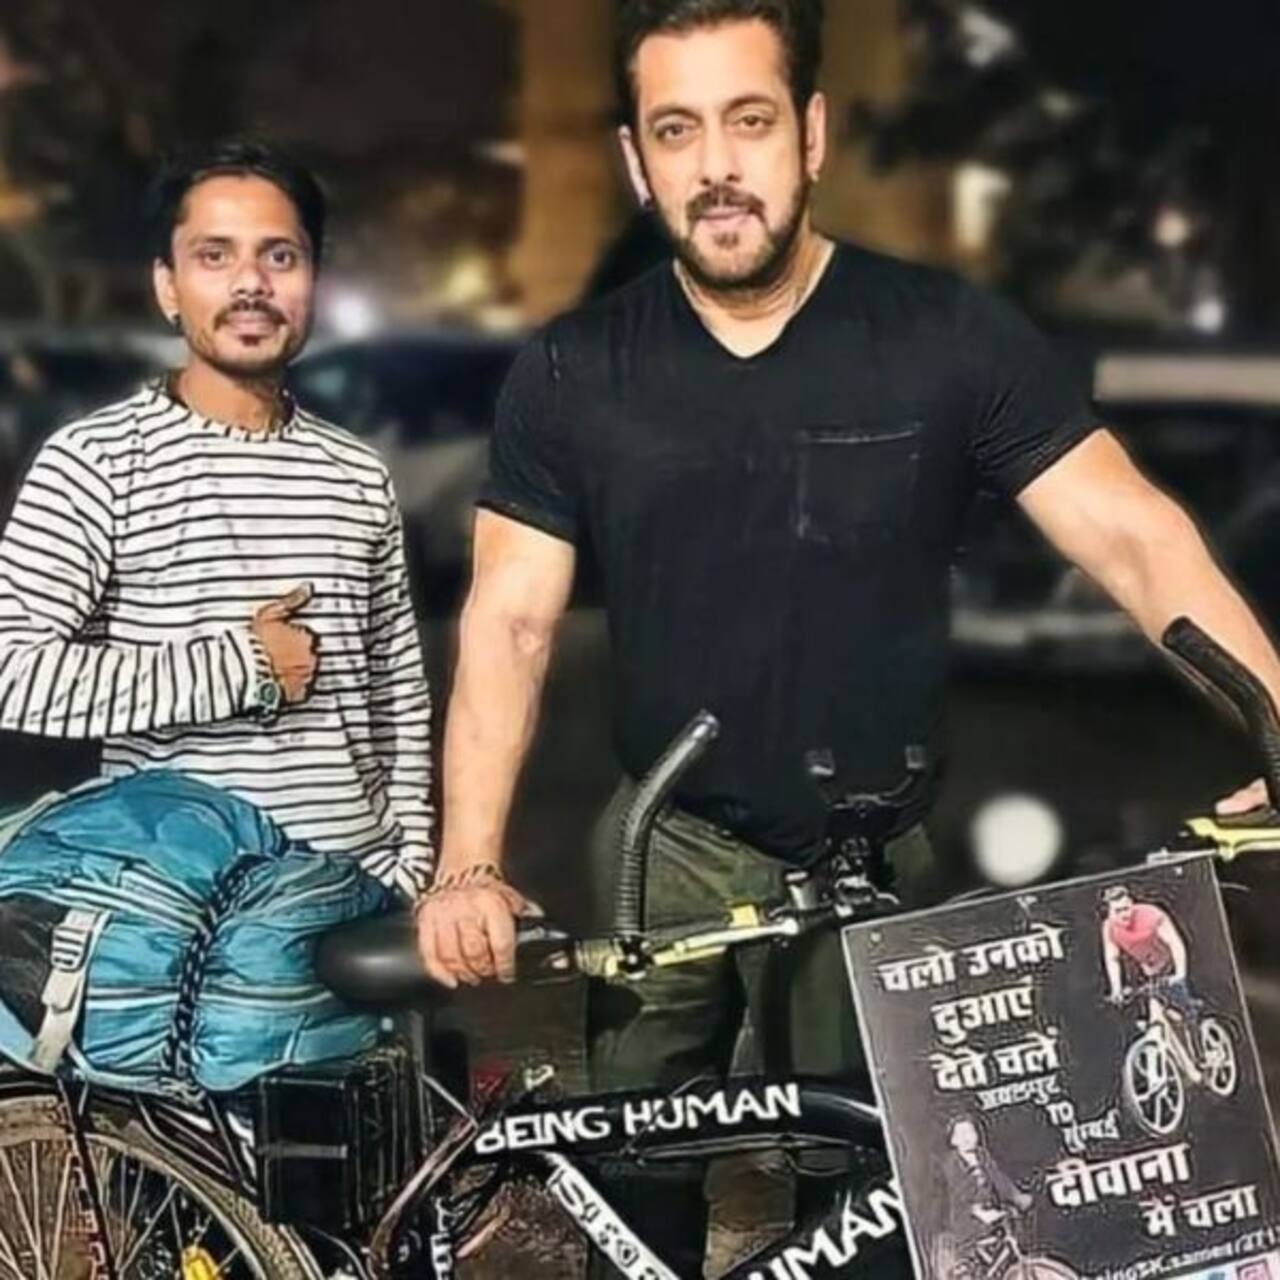 सलमान खान से मिलने के लिए 1100 किमी साइकिल चलाकर मुंबई पहुंचा फैन, भाईजान ने बड़ा दिल दिखाकर किया स्वागत